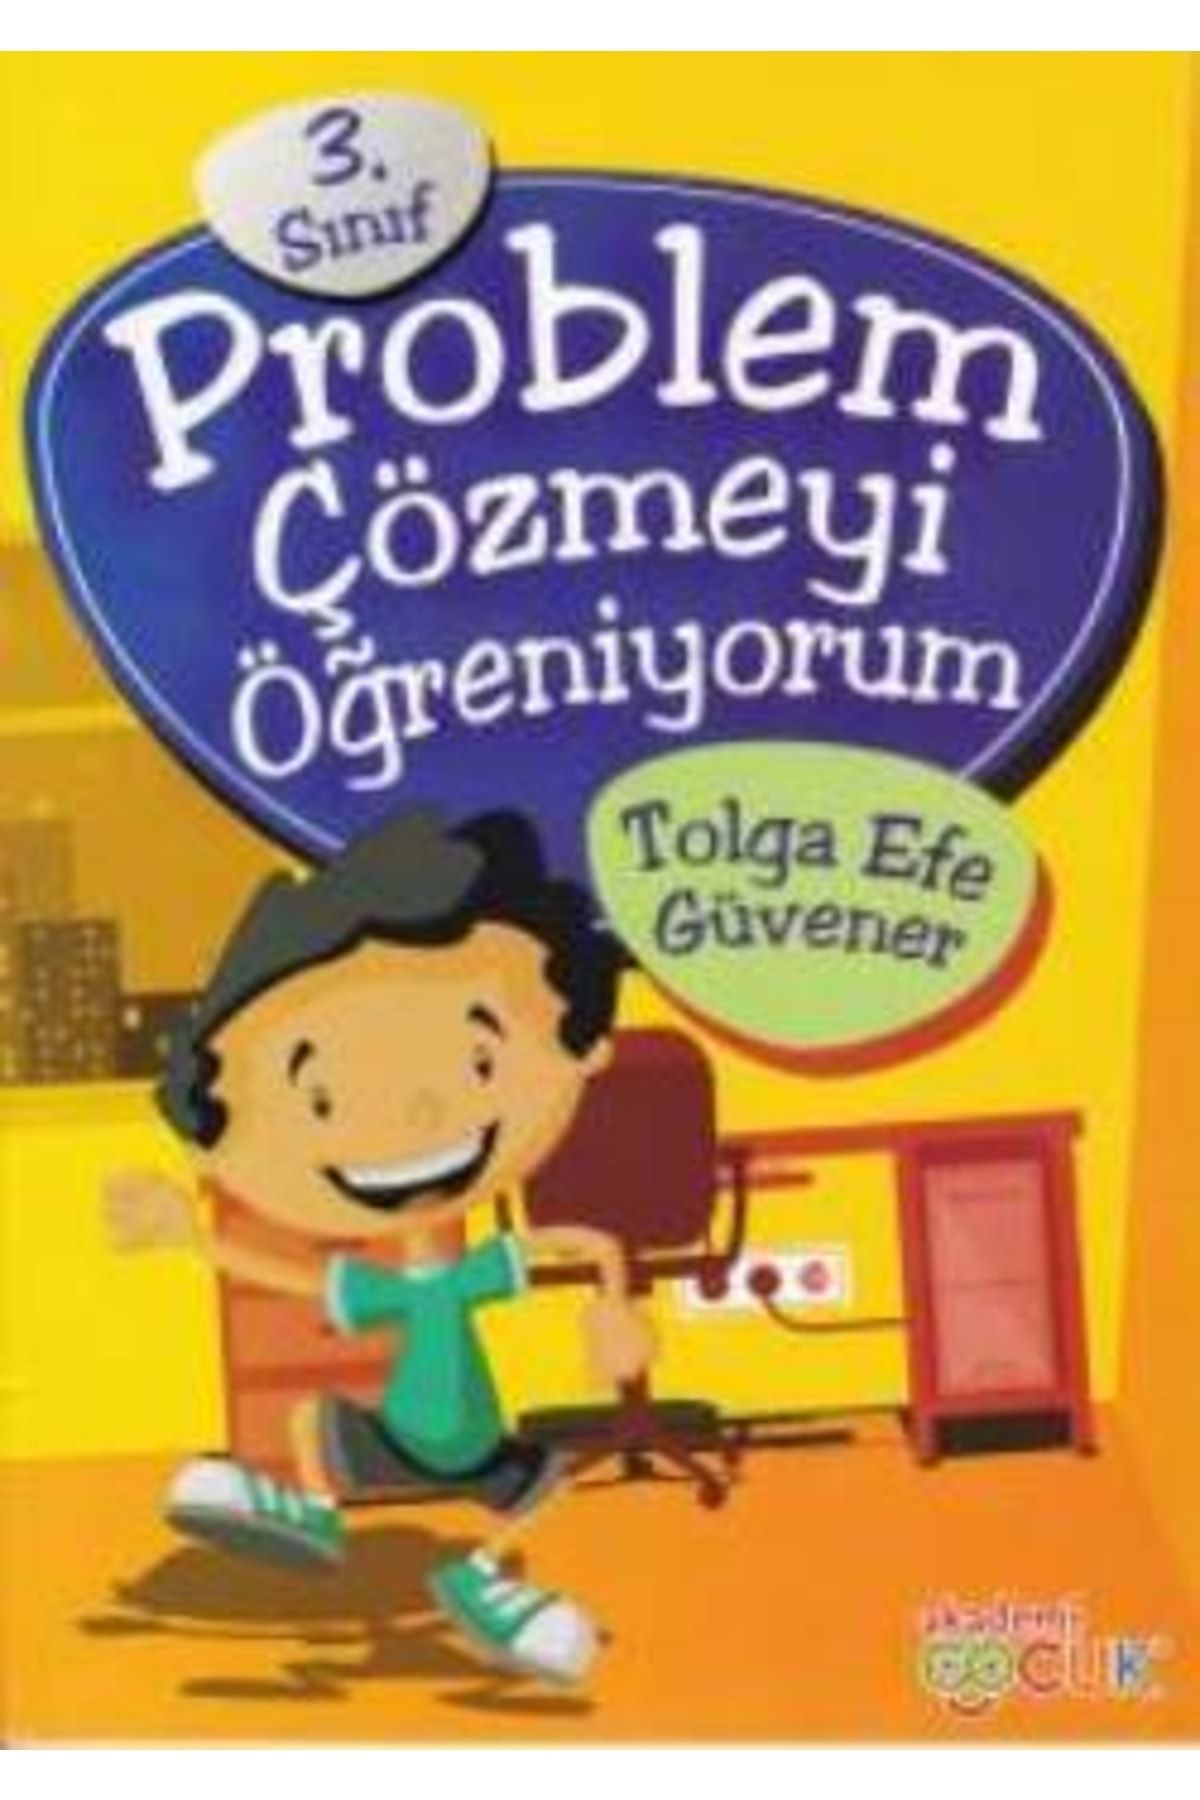 Akademi Çocuk 3. Sınıf Problem Çözmeyi Öğreniyorum - - Tolga Efe Güvener Kitabı